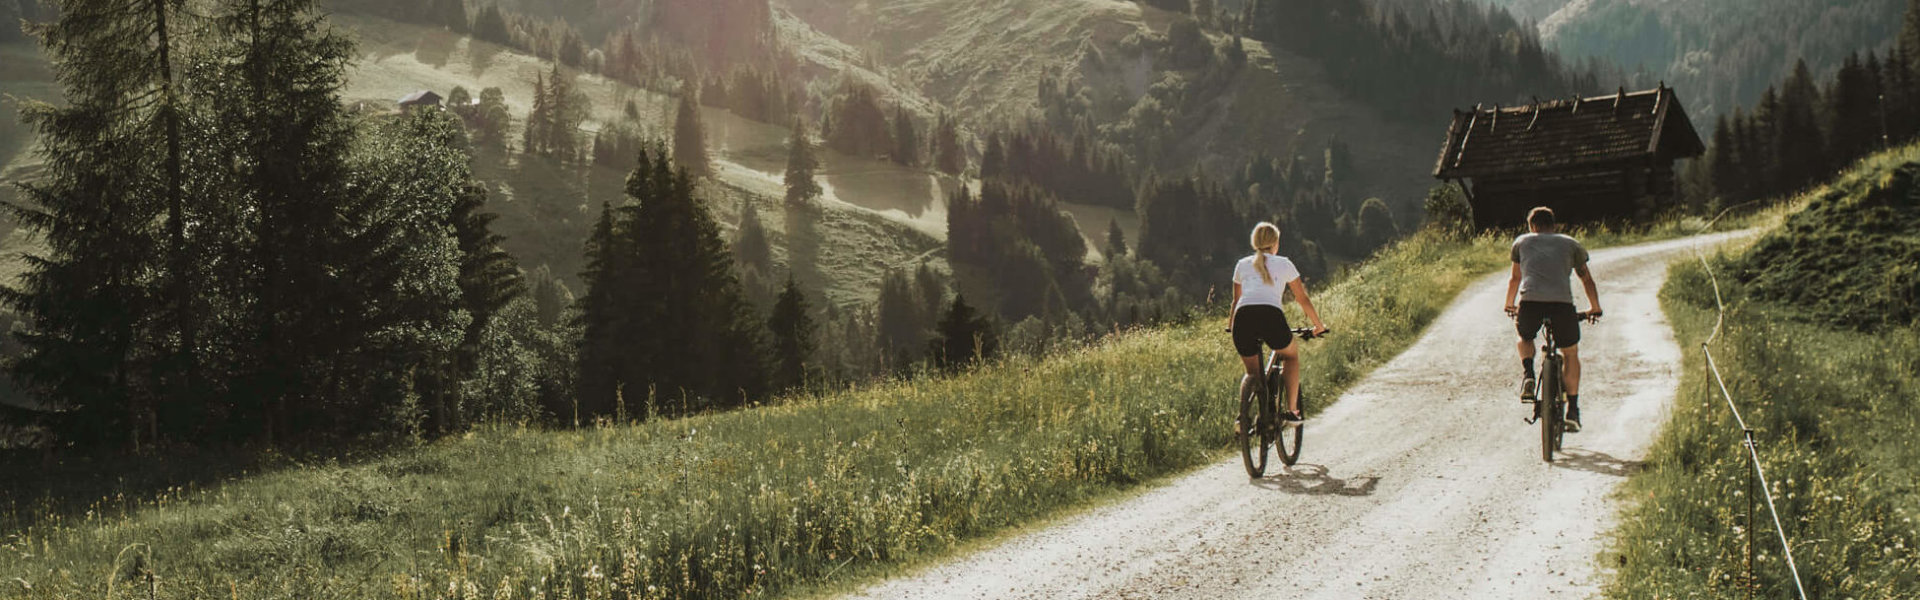 Radfahren auf der Salzburger Sonnenterrase